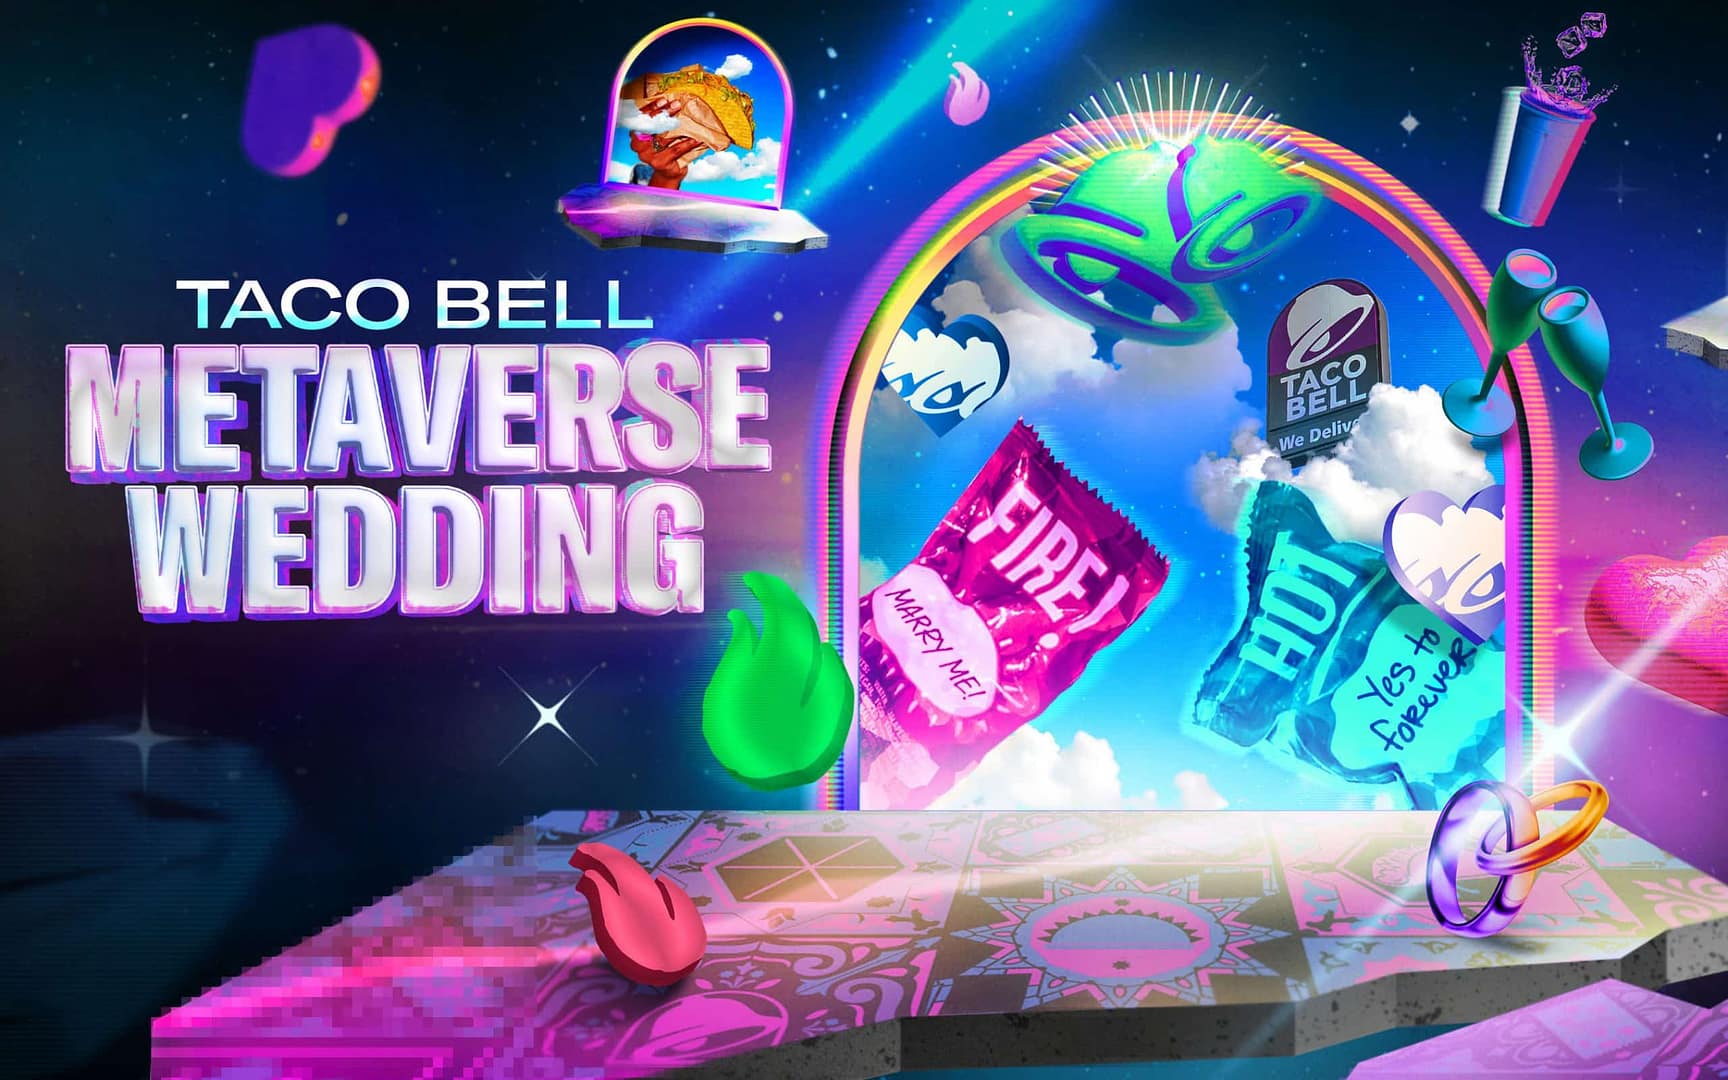 Póster de Taco Bell Metaverse Wedding que muestra un escenario virtual con anillos